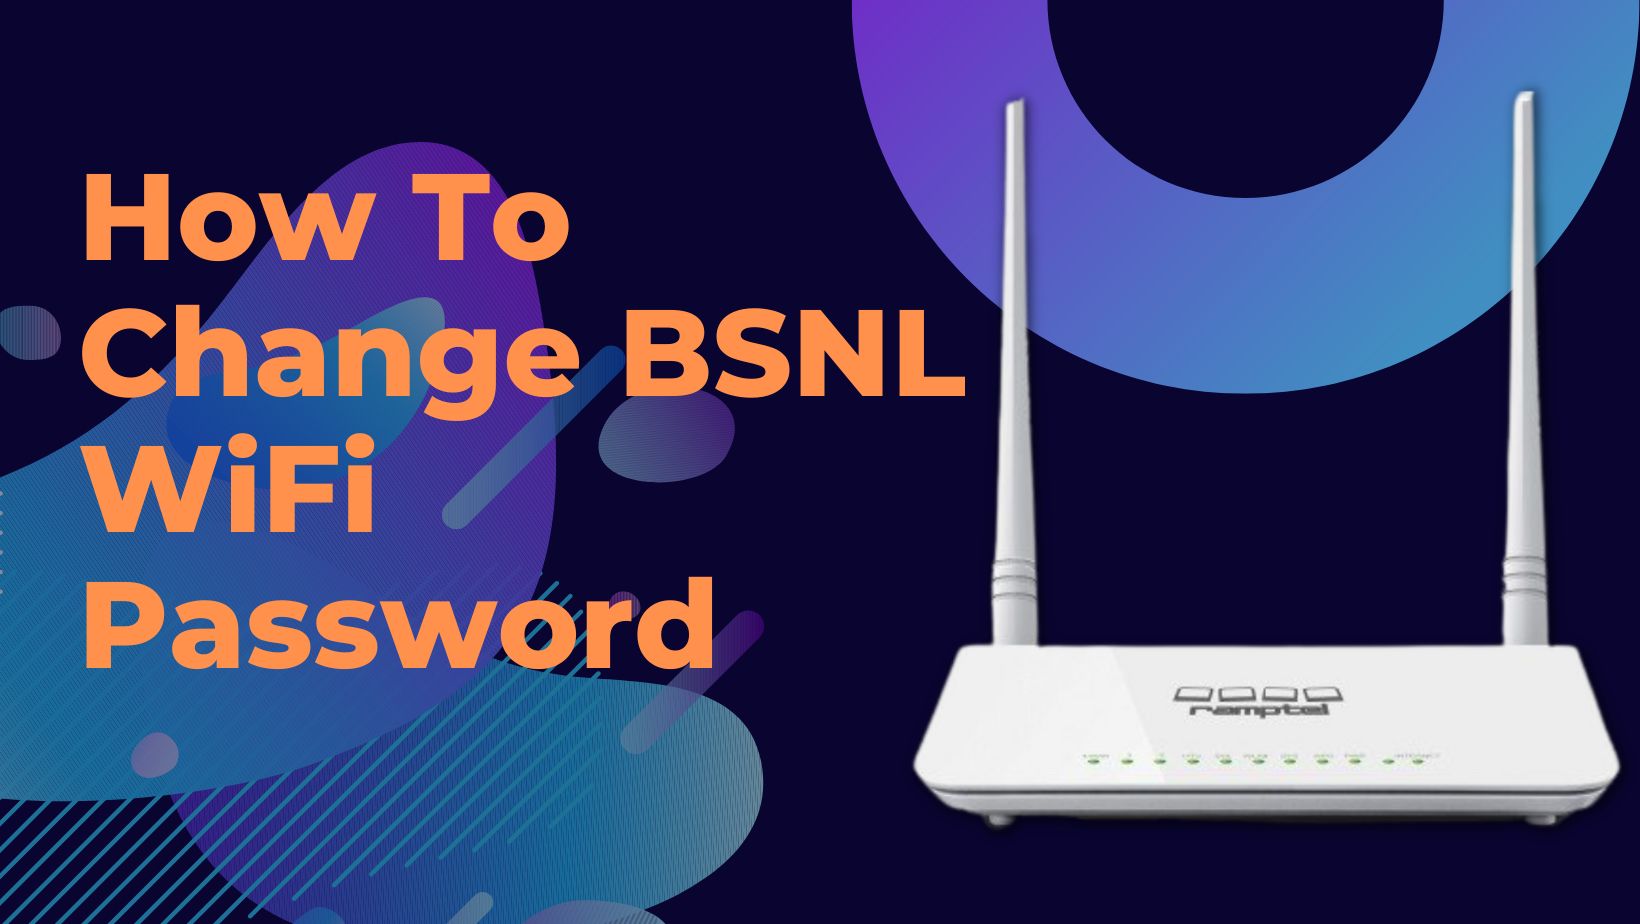 How To Change BSNL WiFi Password